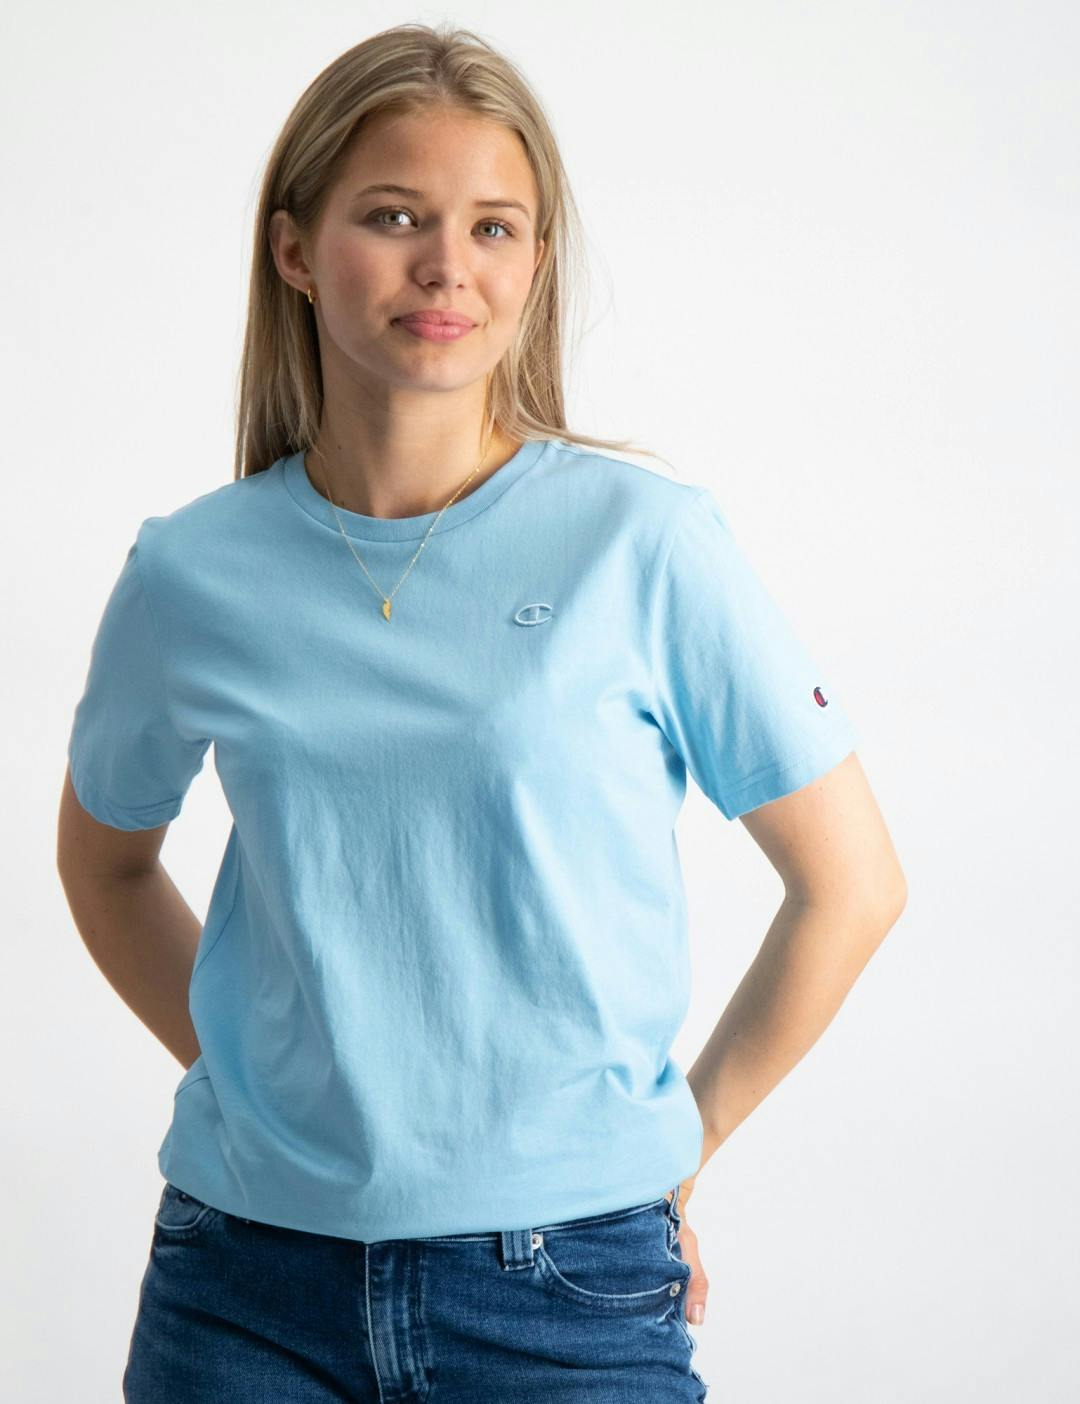 Blau Crewneck T-Shirt Mädchen Store | Kids Brand für